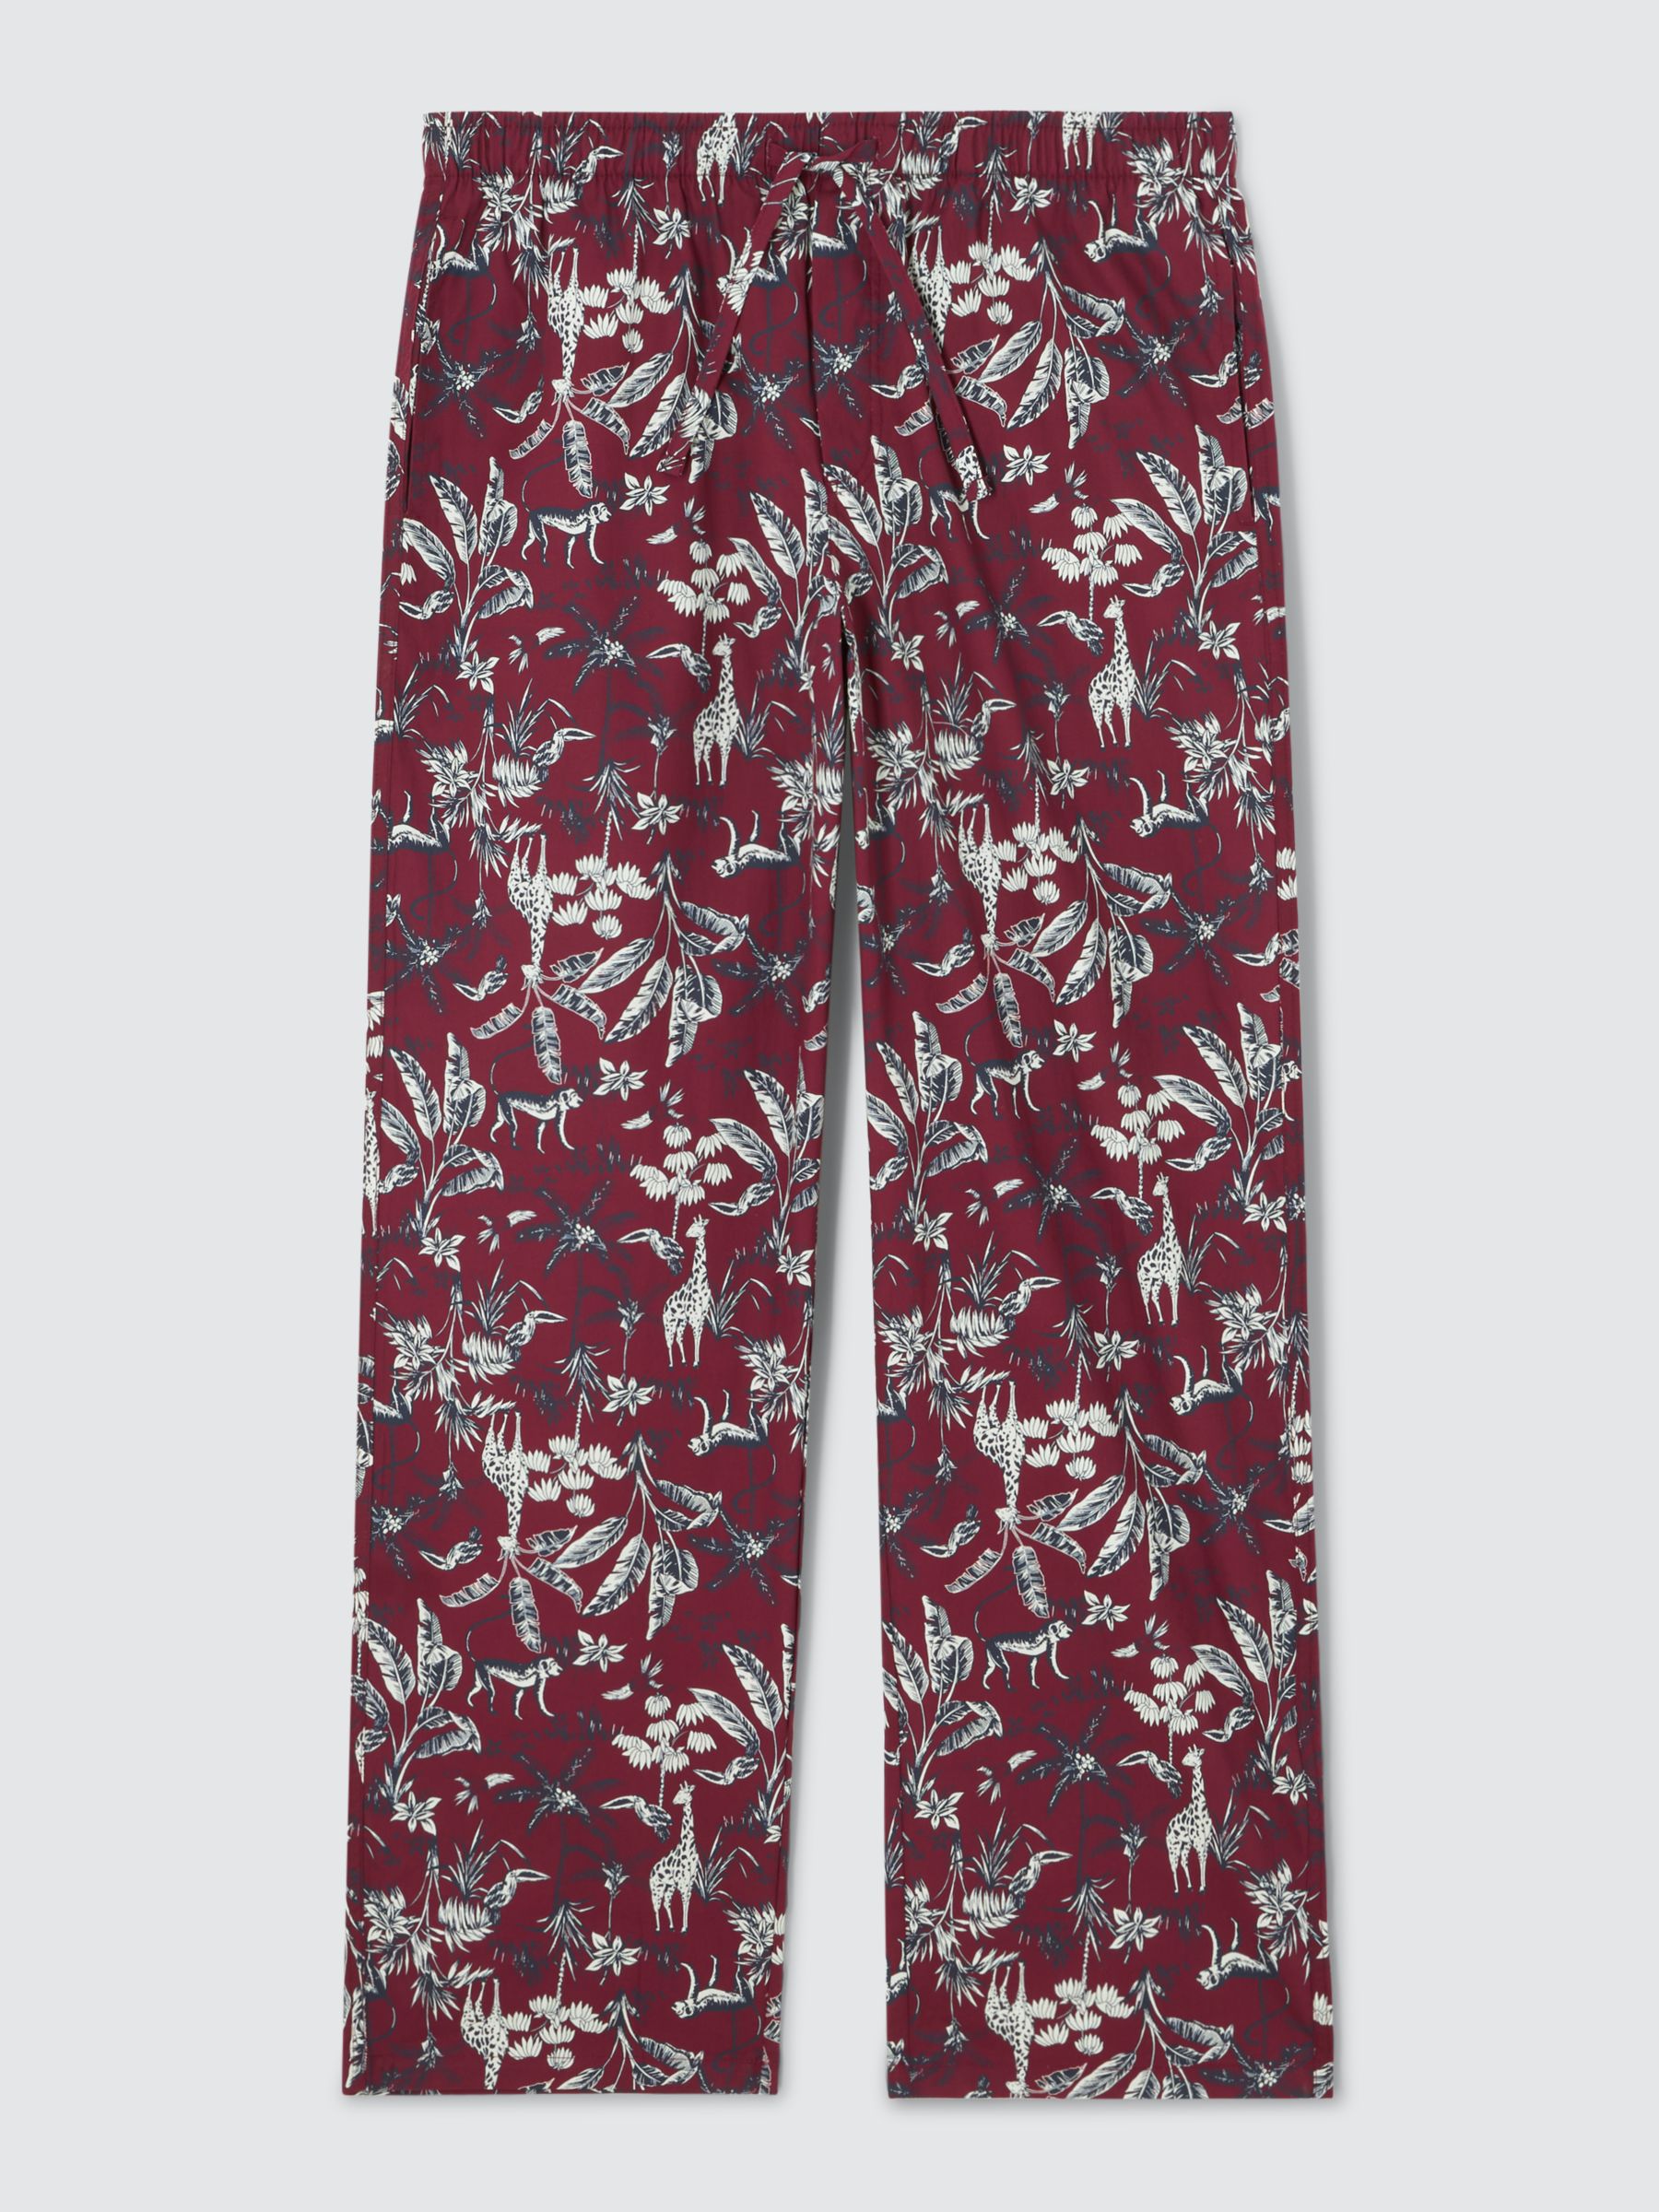 John Lewis Organic Cotton Woven Serengeti Print Lounge Pants, Red/Multi, M